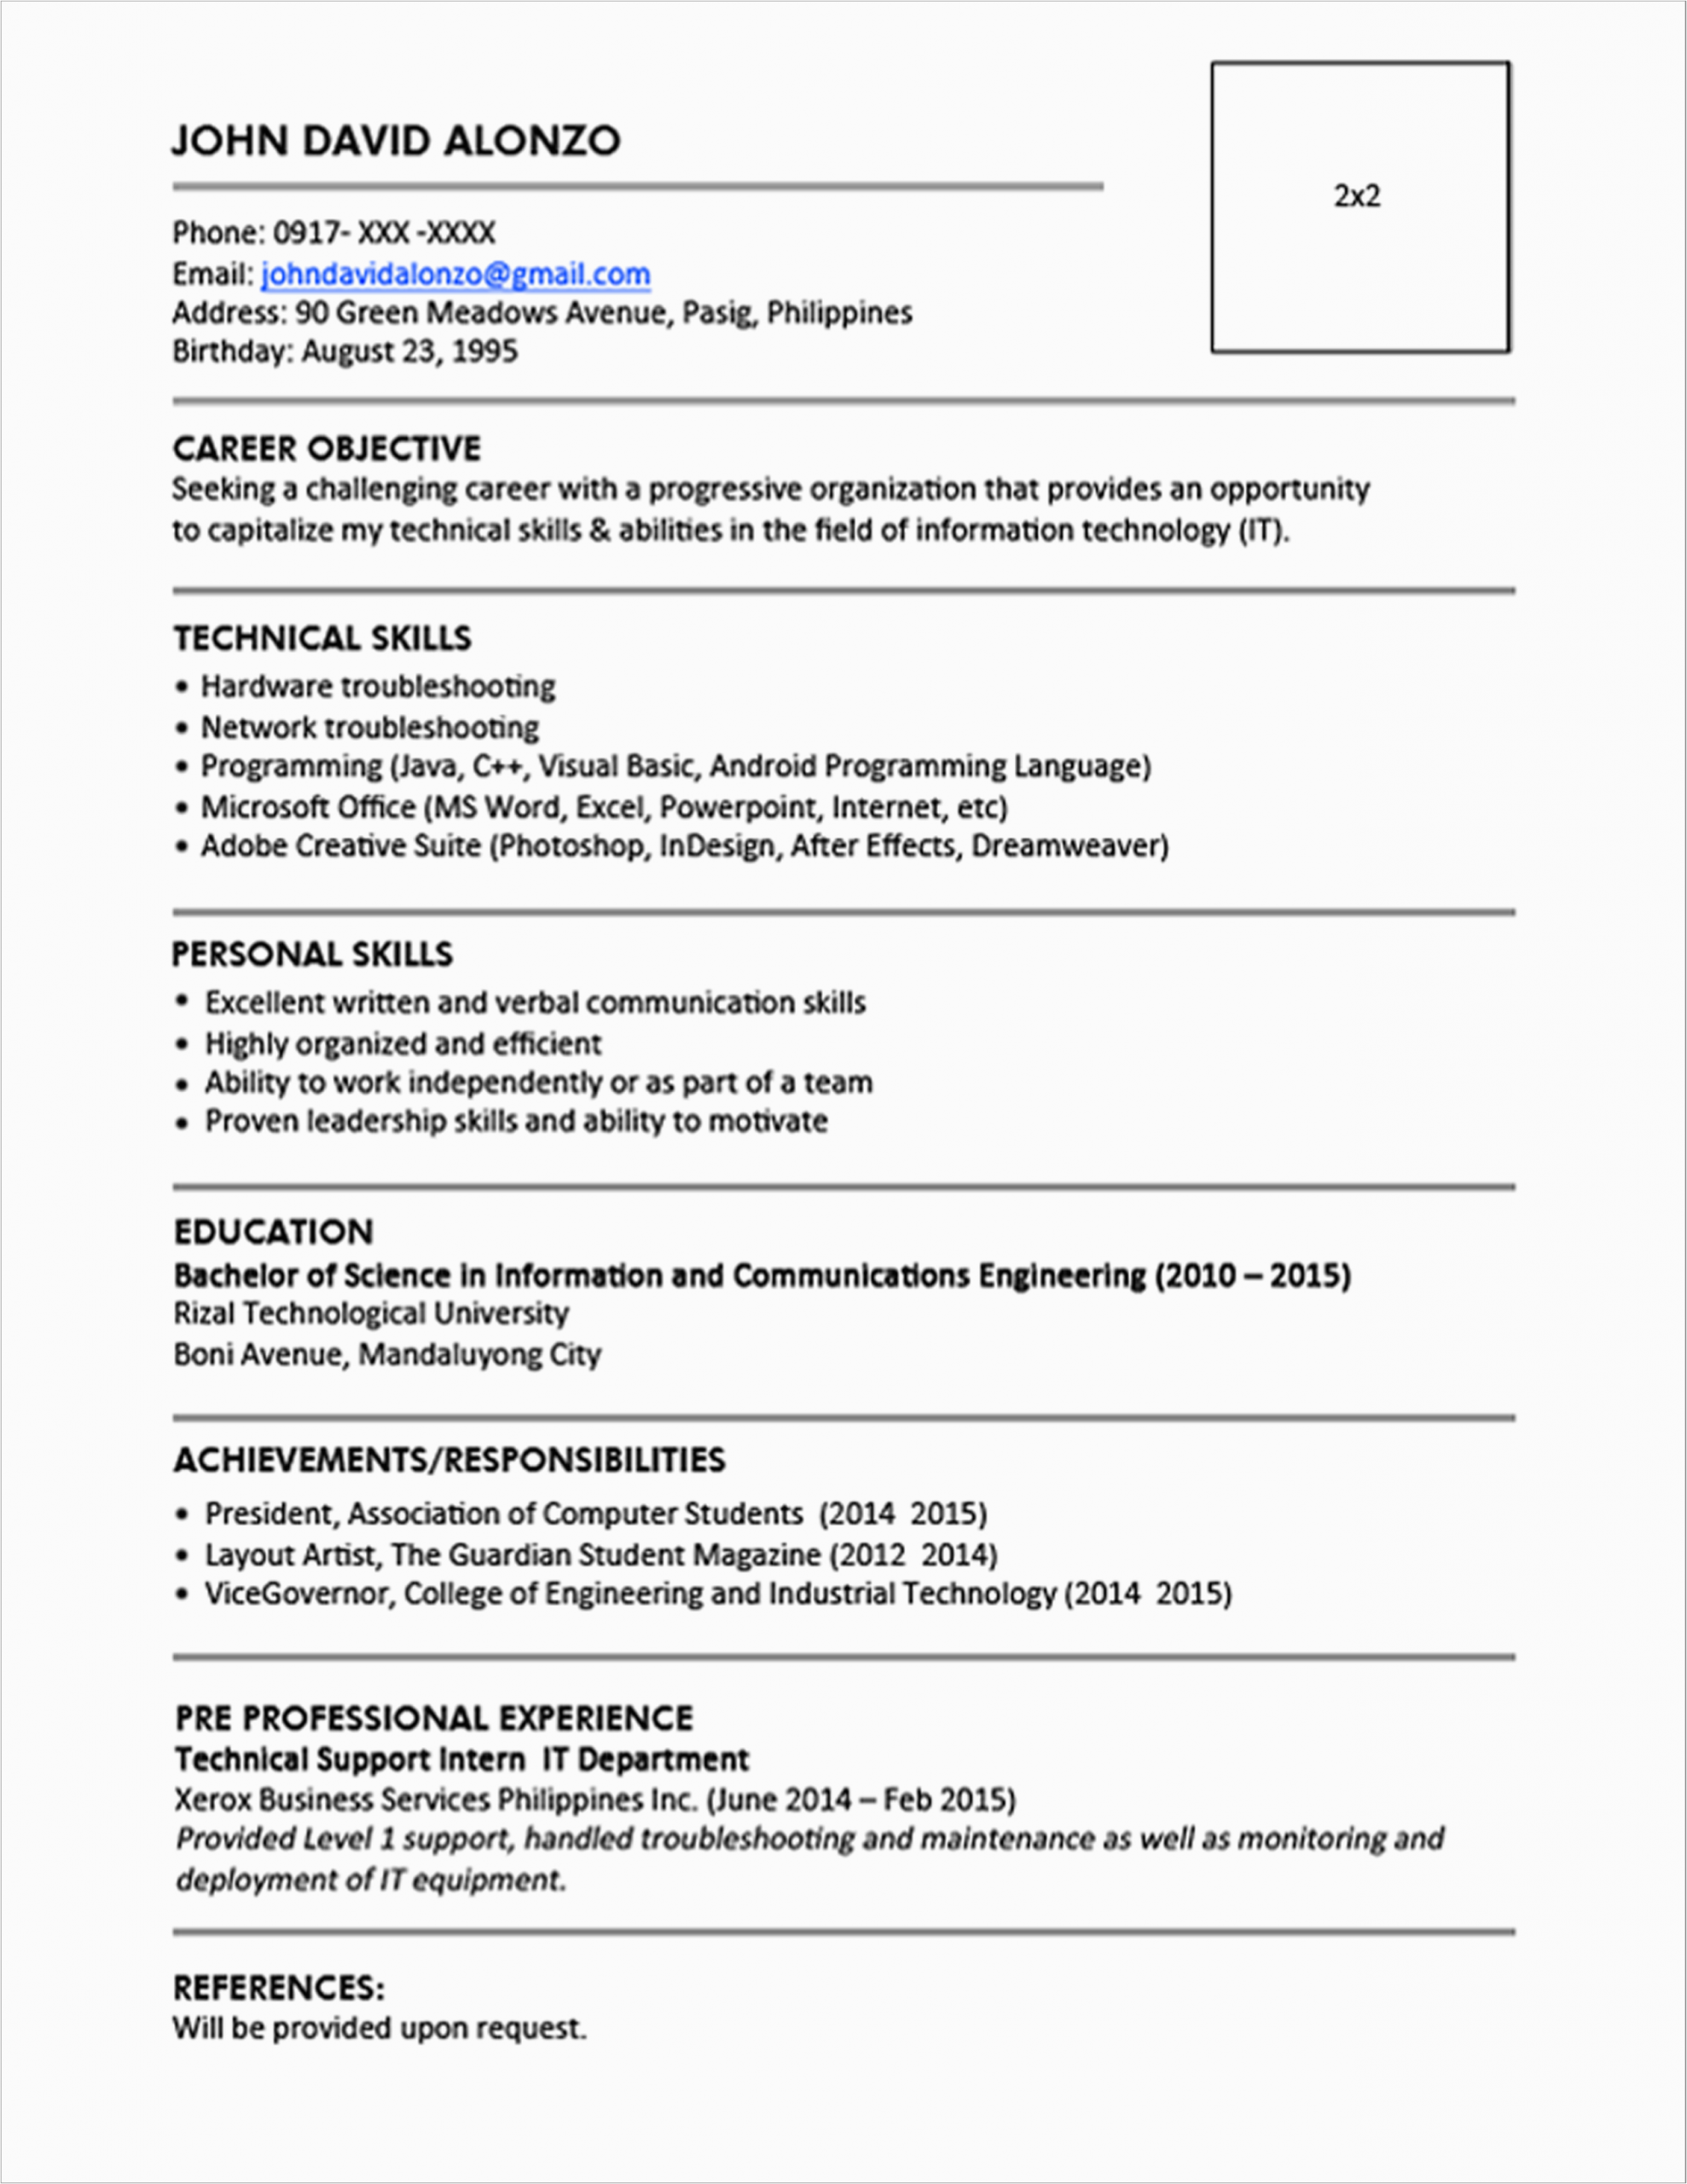 Best Resume Sample for Fresh Graduate Fresh Graduate Engineering Resume Sample Best Resume